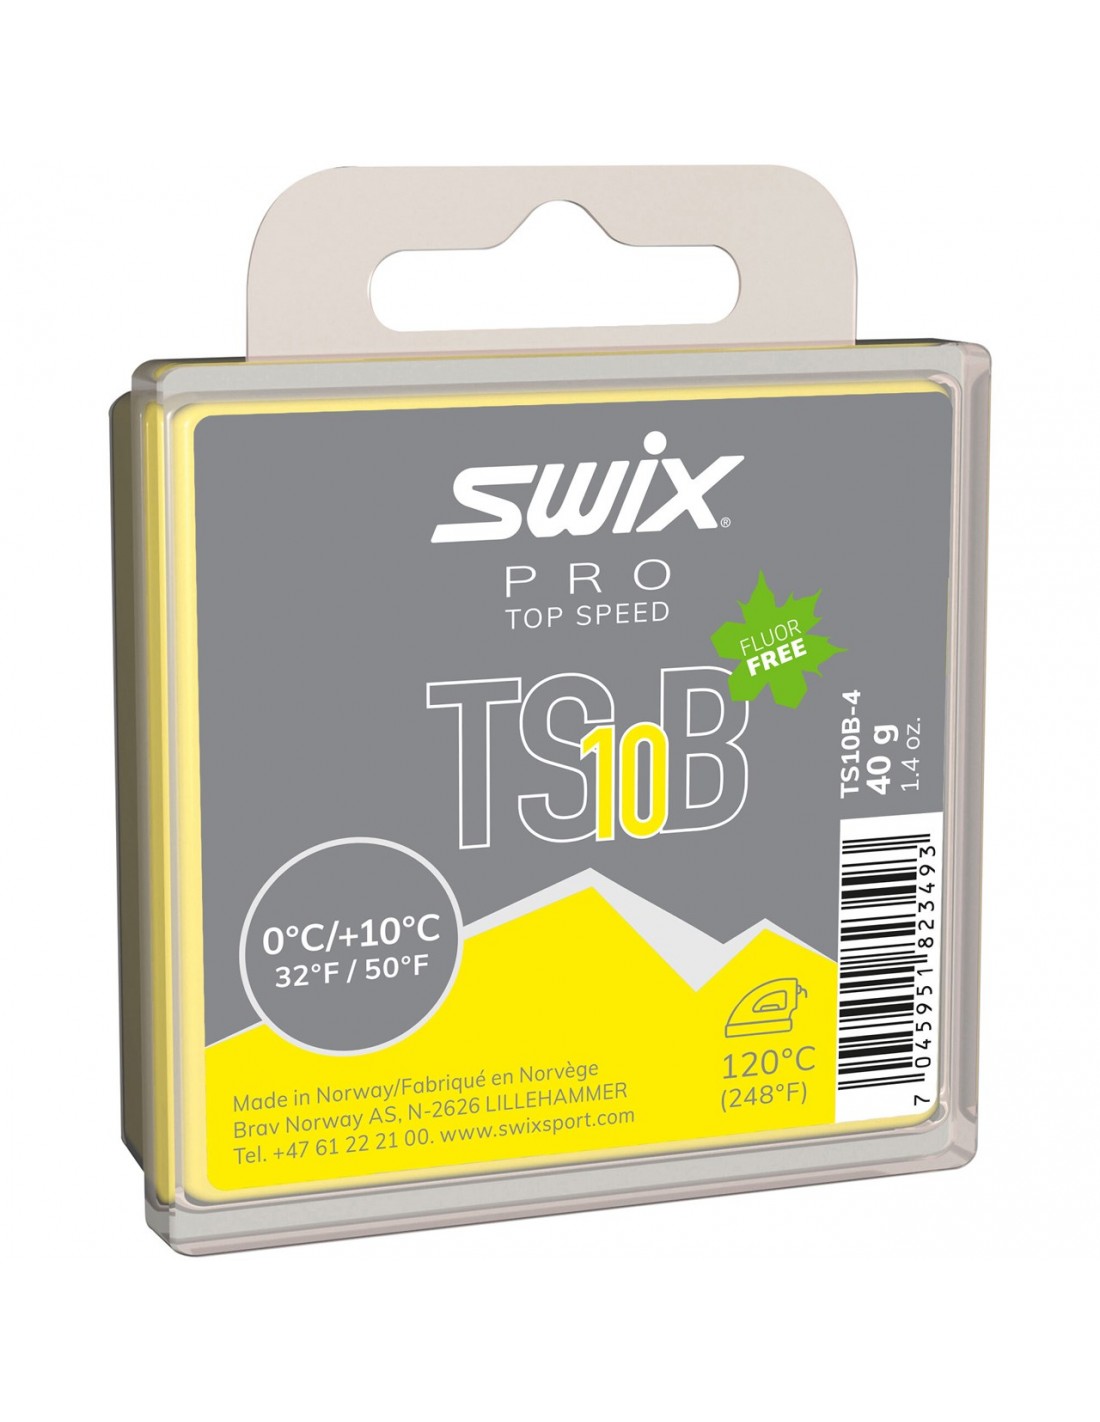 Swix TS10 Black, 0°C/+10°C, 40g Wachsart - Blockwachs, Wachsfarbe - Gelb, Wachsqualität - Grundwachs/Basiswachs, Einsatzbereich - Alpin, Wachs Swix - +10° bis 0°, von Swix